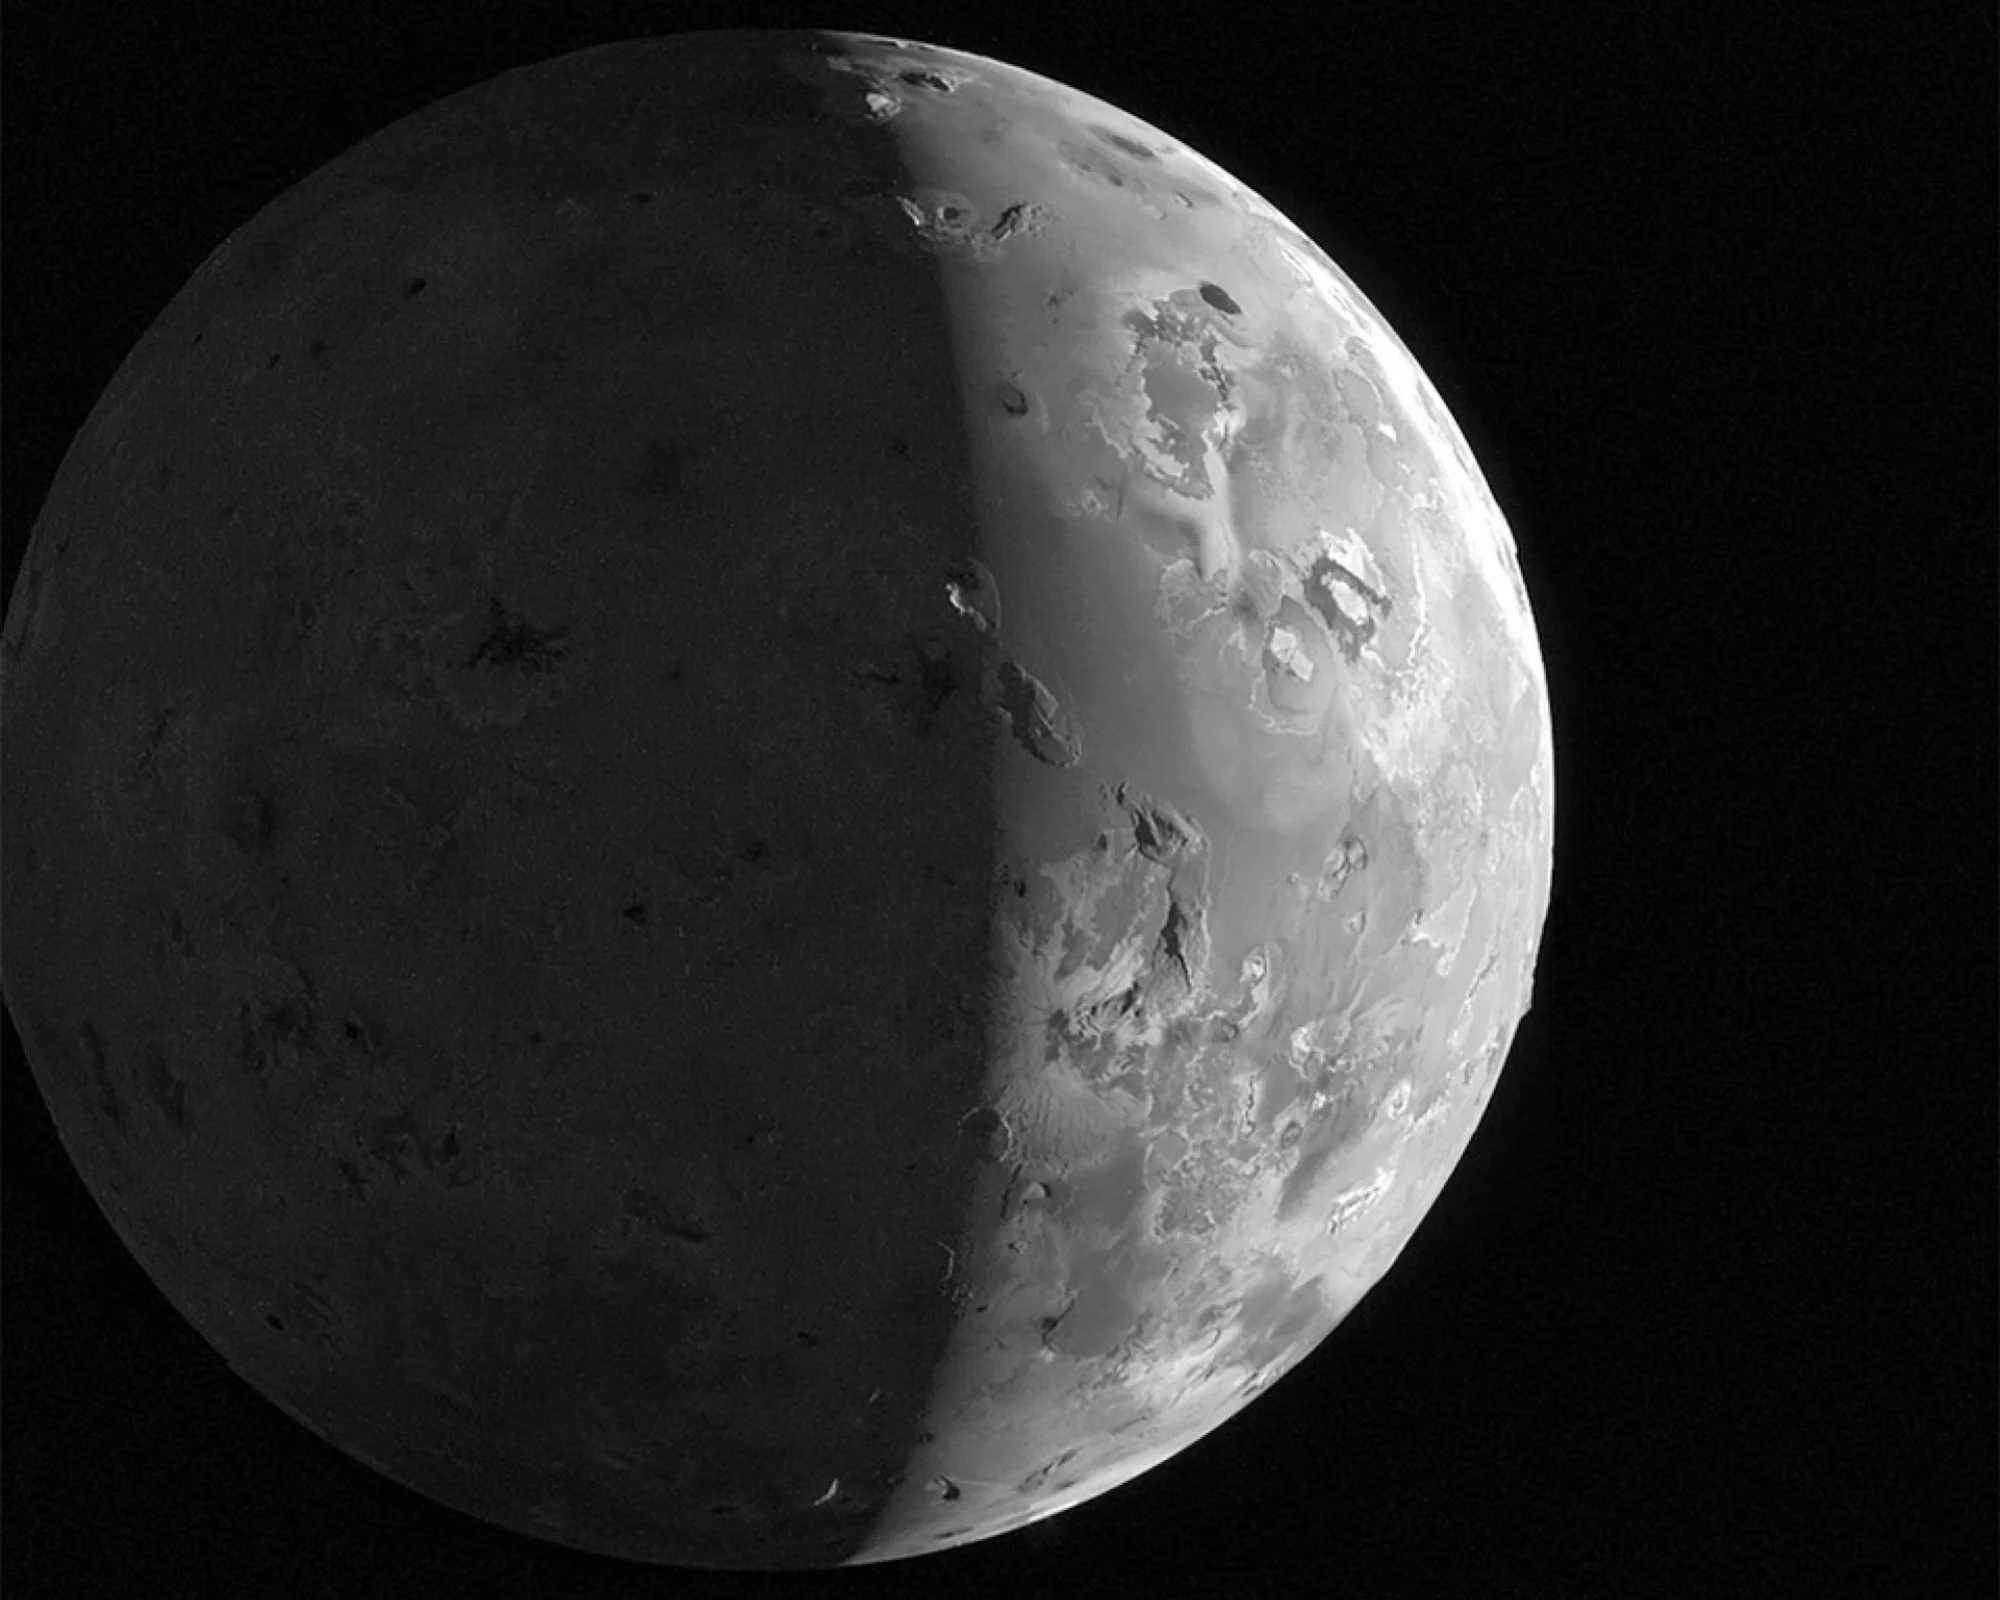 Зонд Juno получил новое изображение спутника Юпитера — Ио